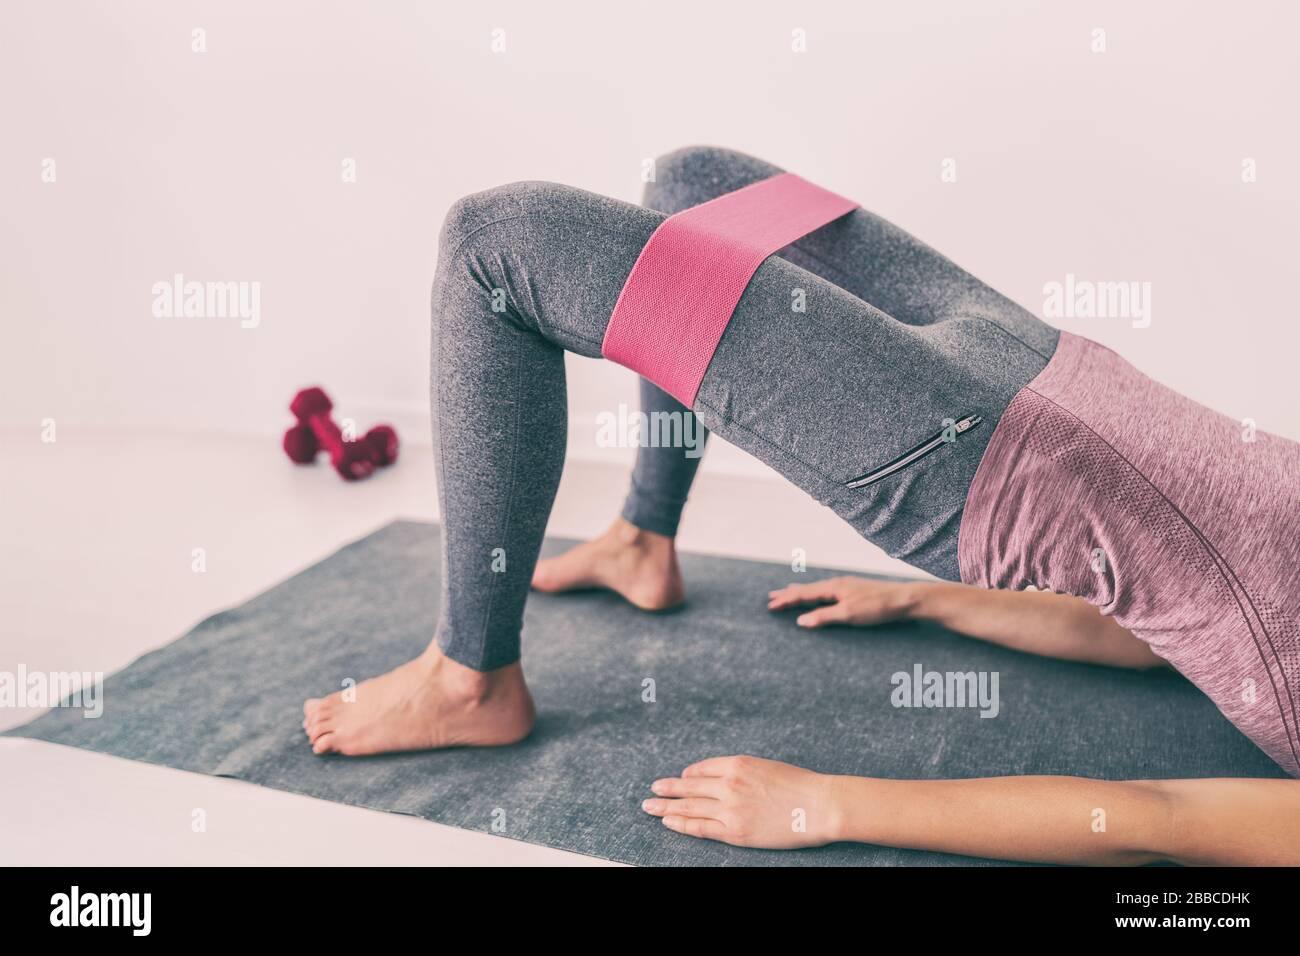 Widerstandsbänder Glute Hip Loop Gesäßbein Kreis Beine Hocken Yoga 